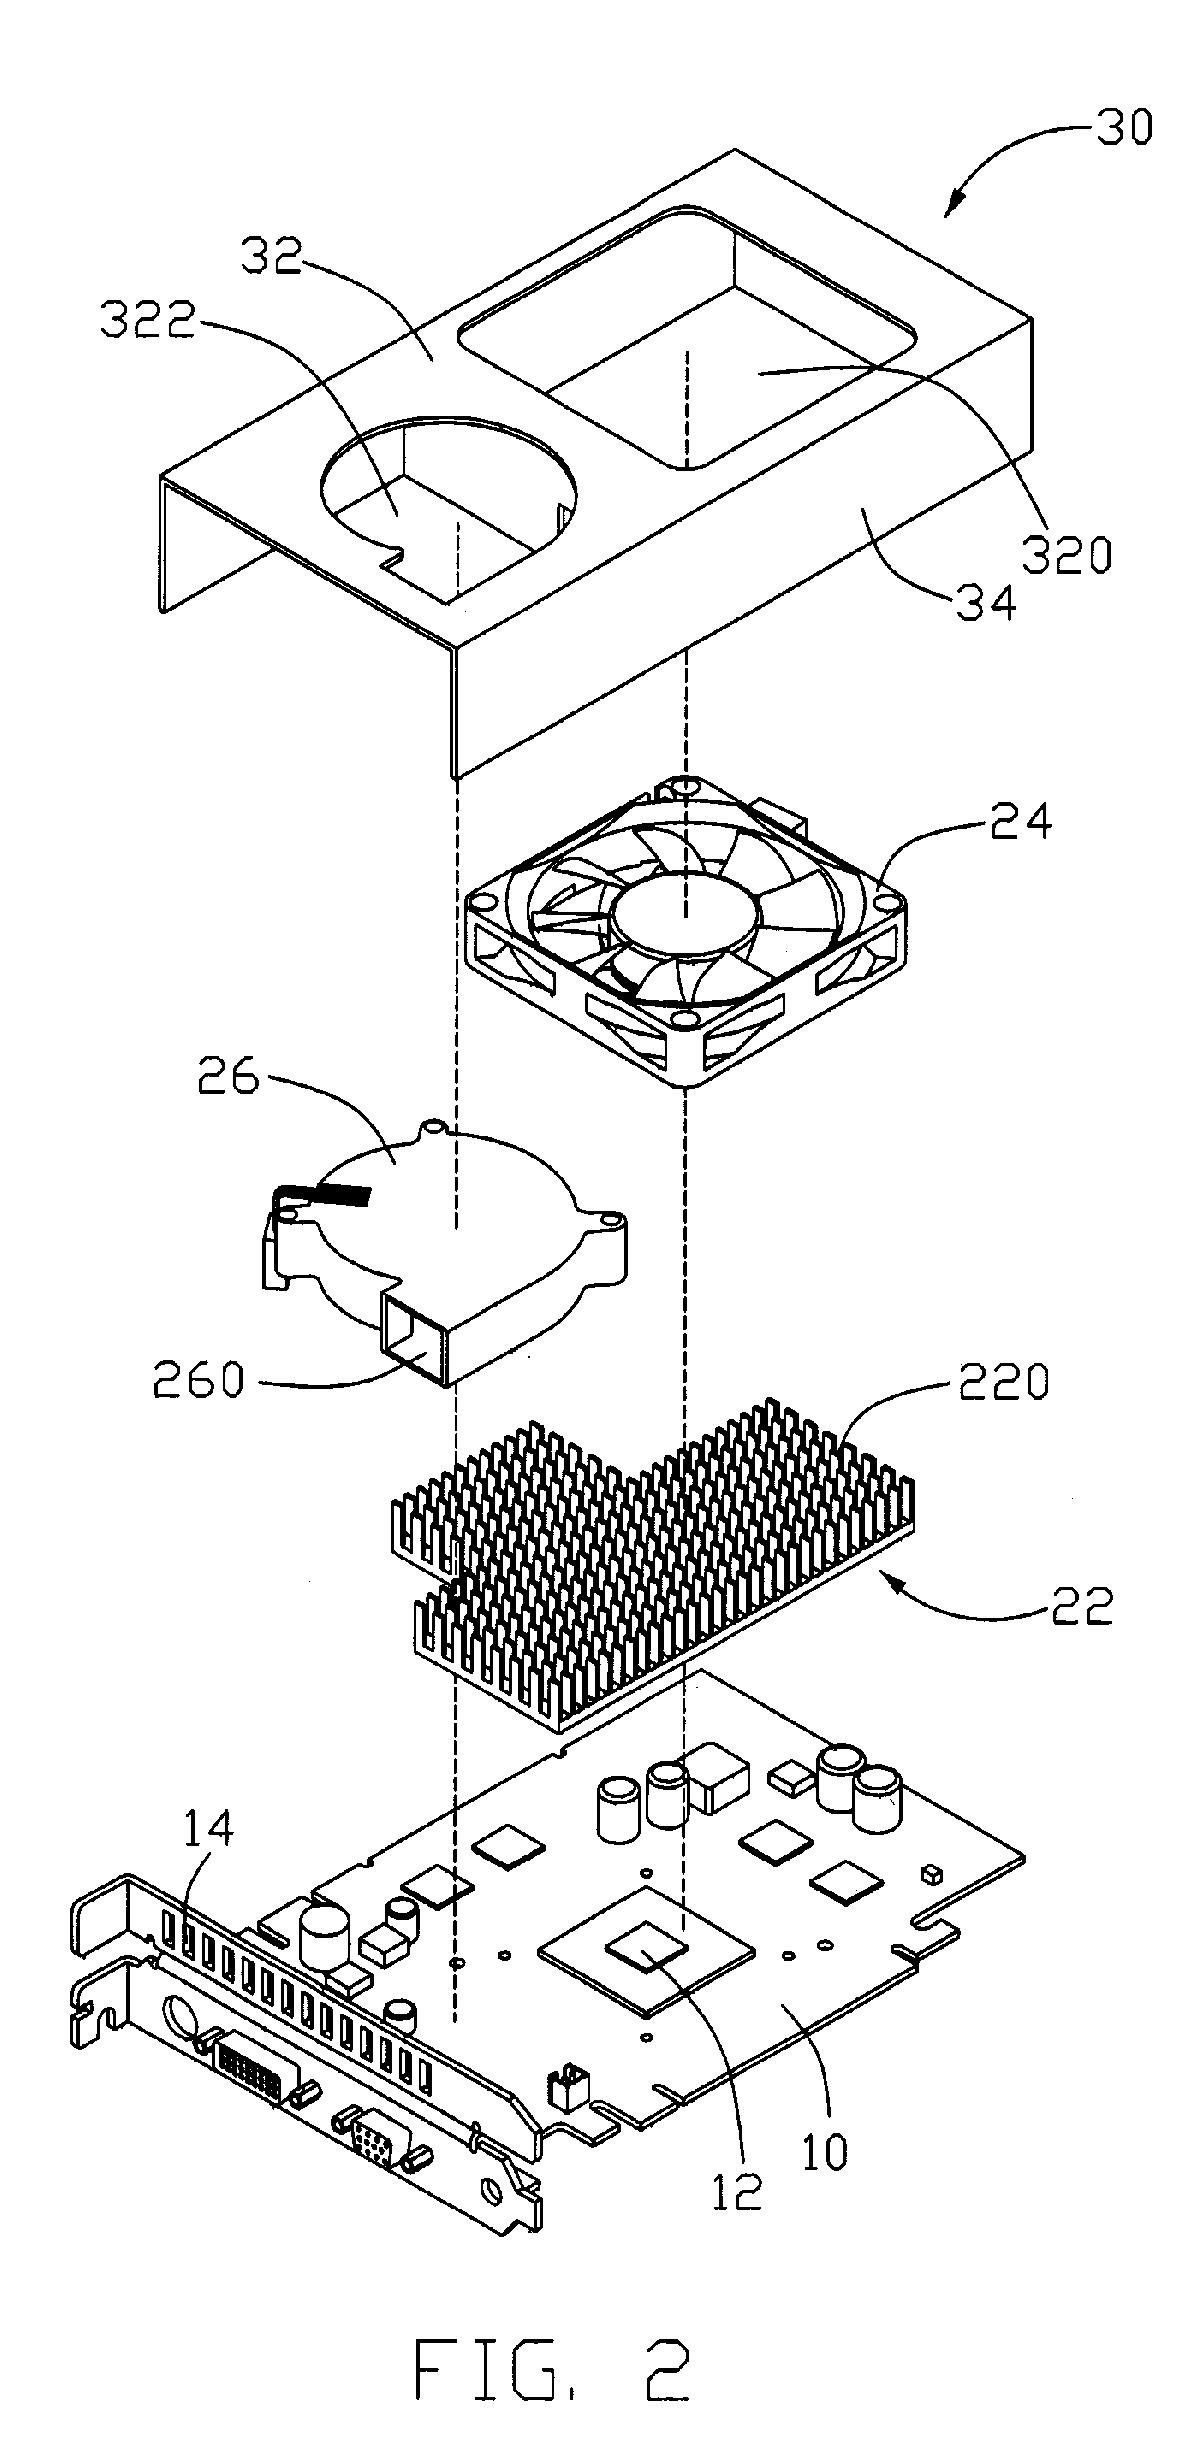 Heat dissipation device having a dual-fan arrangement